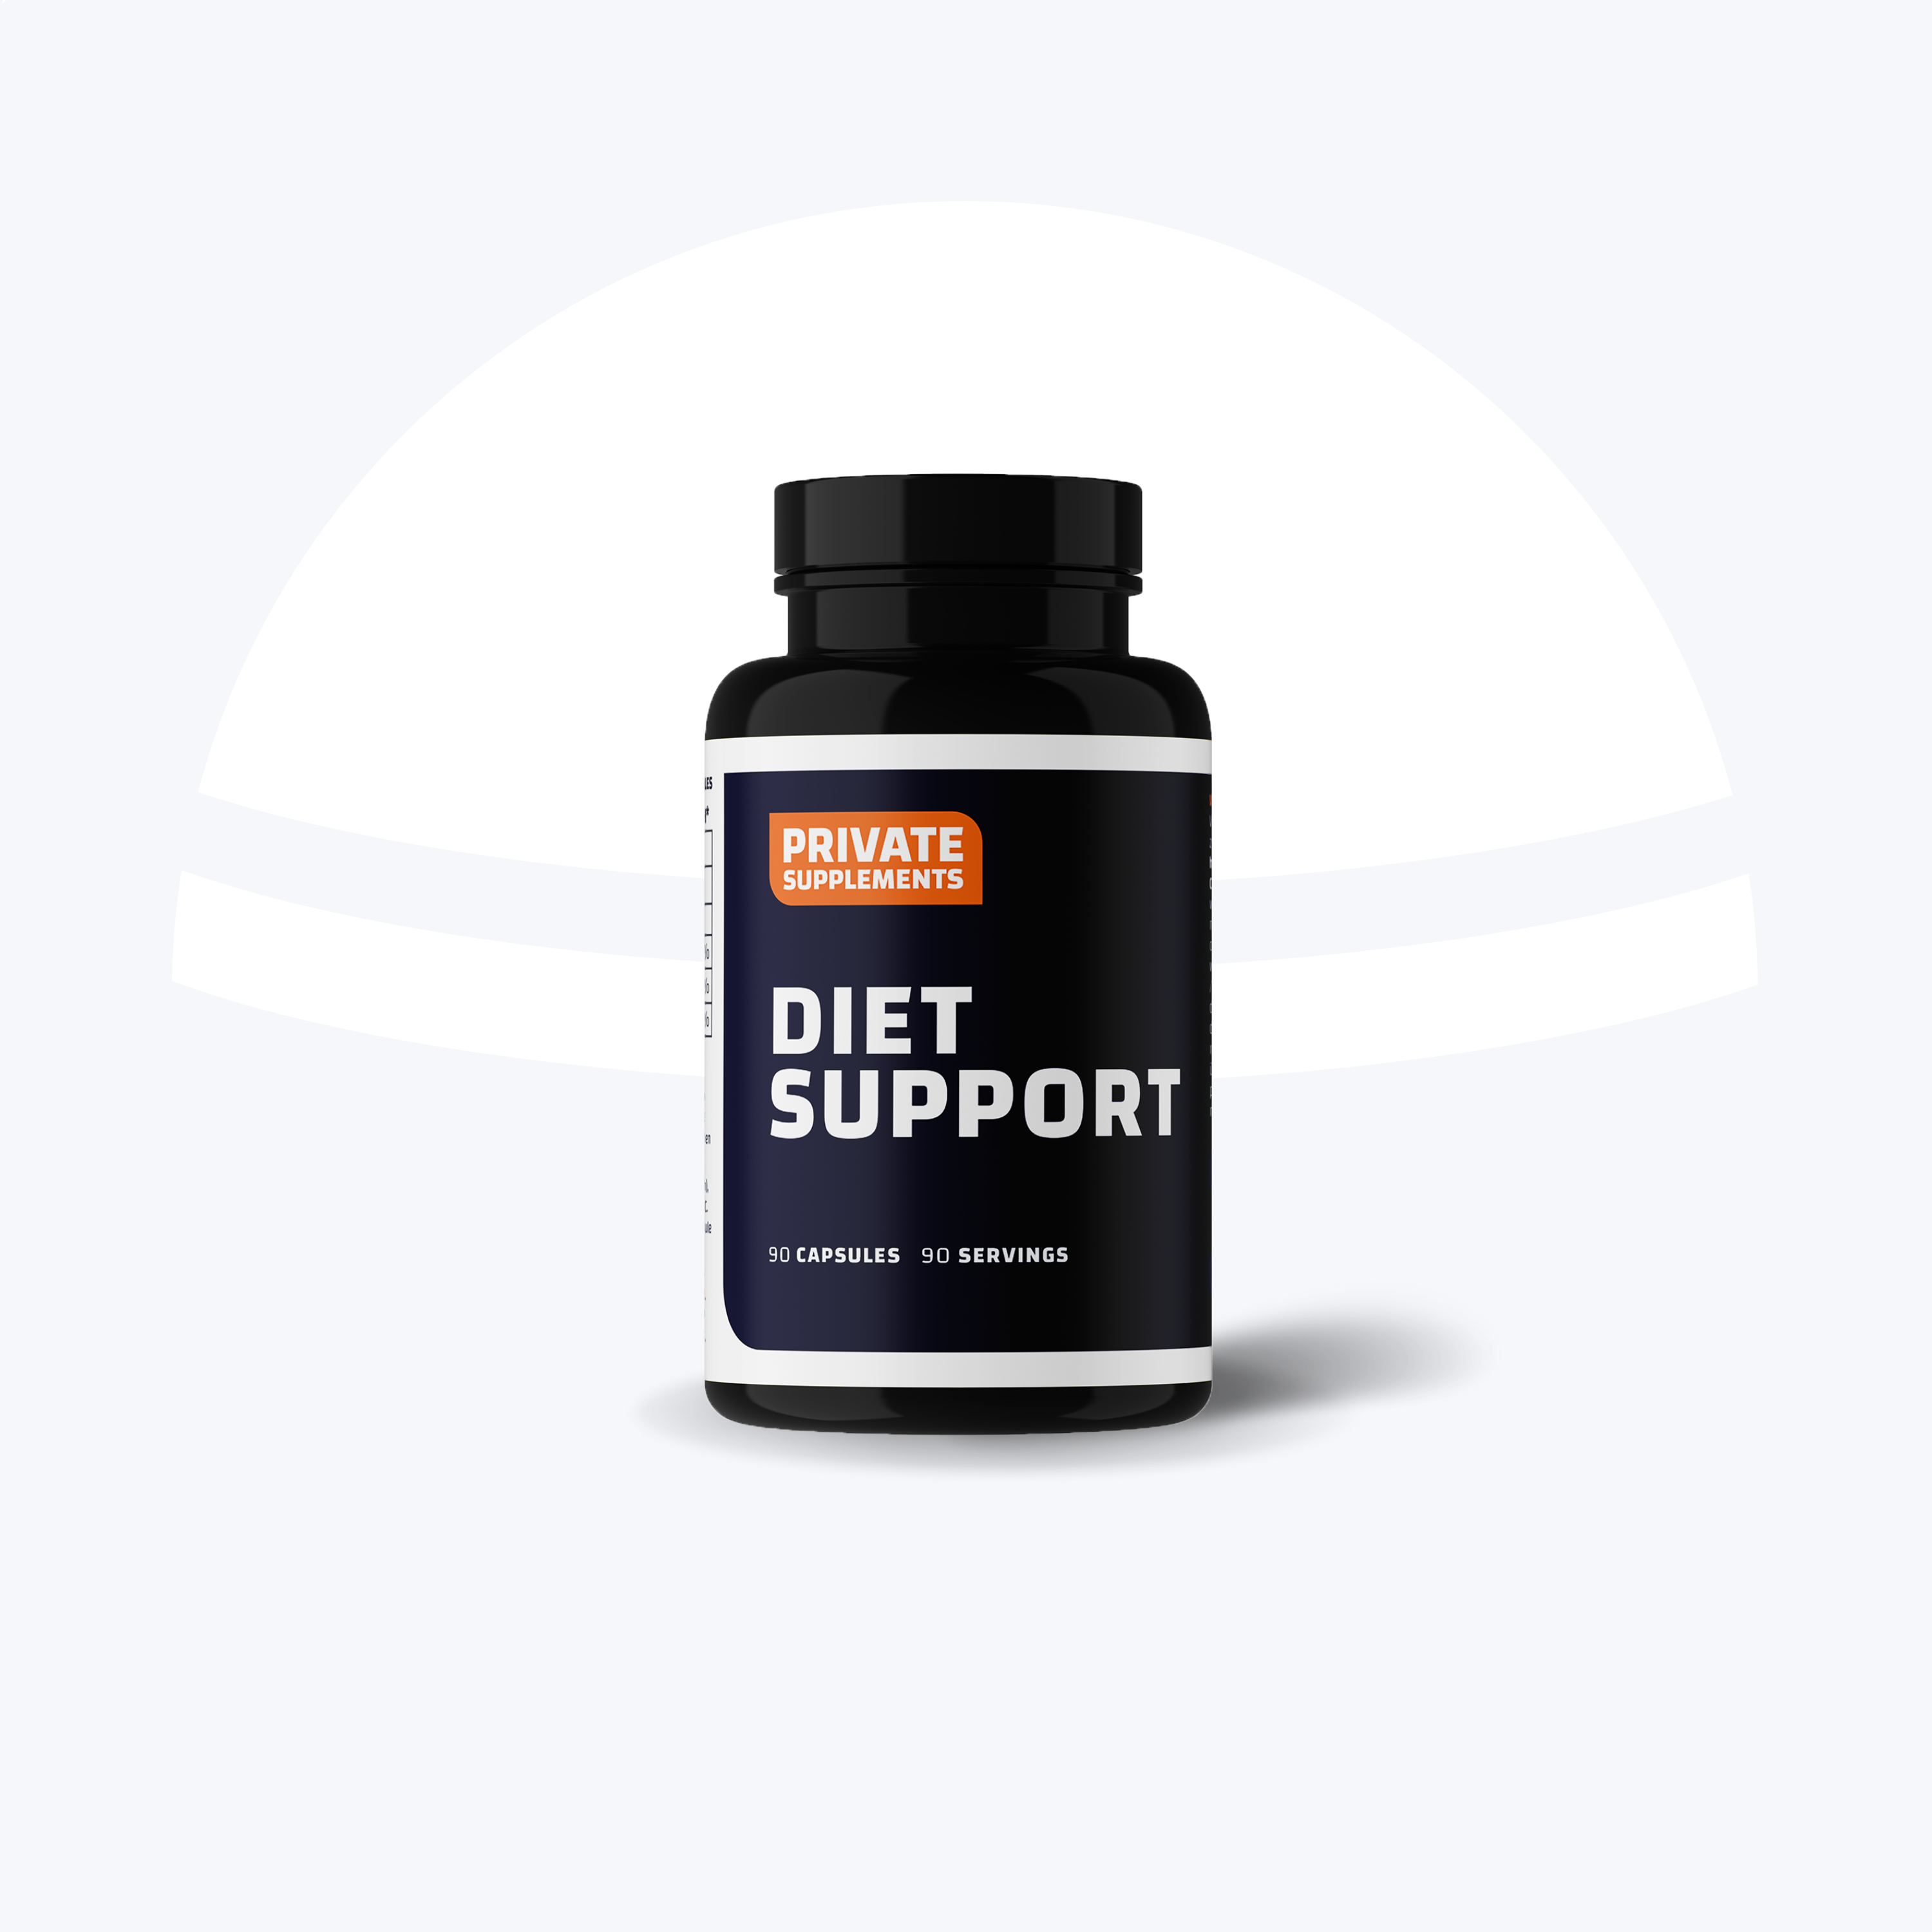 Private supplements voedingssupplementen voor afvallen kopen gewicht en vet verliezen